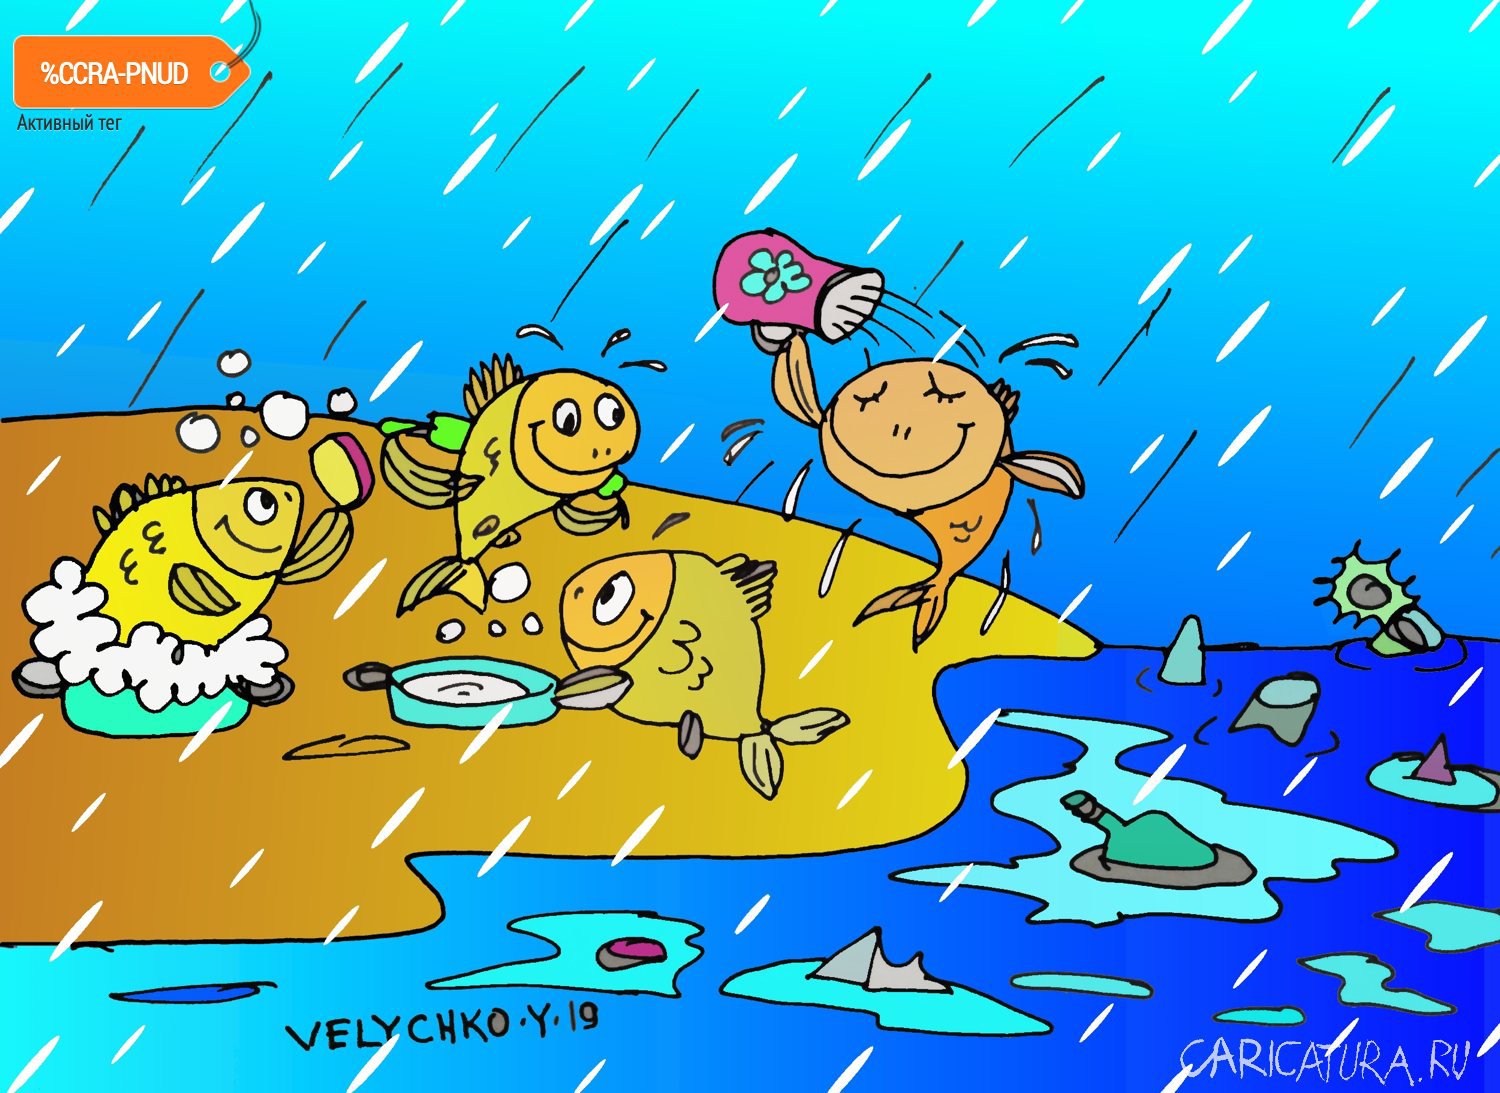 Карикатура "Банный день", Юрий Величко